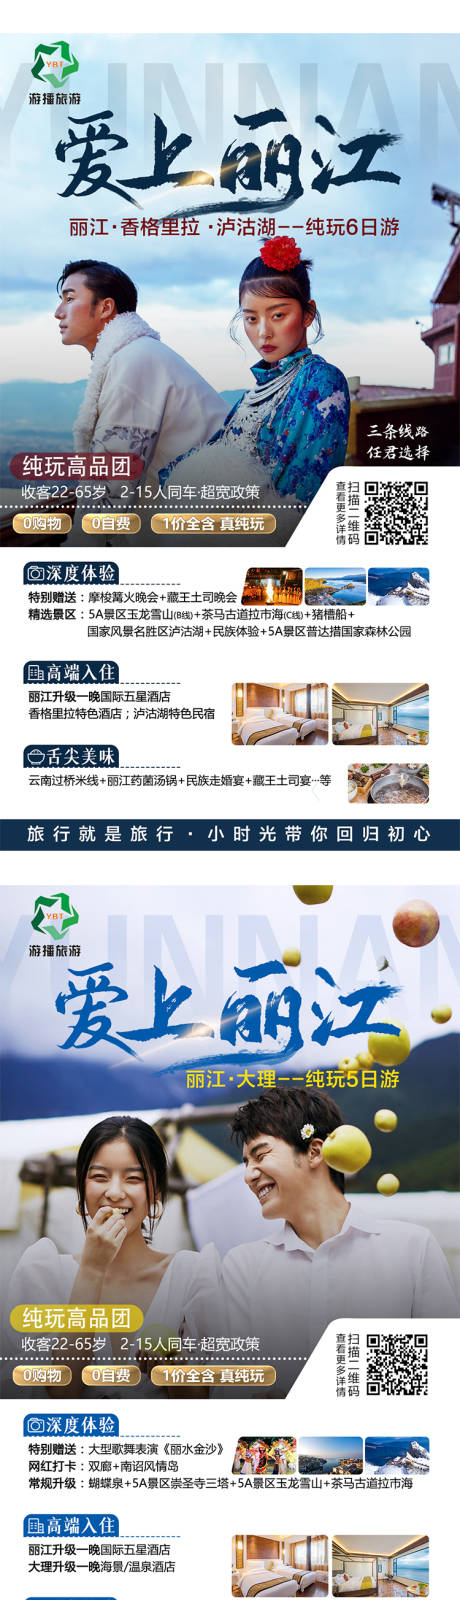 爱上丽江旅游系列海报